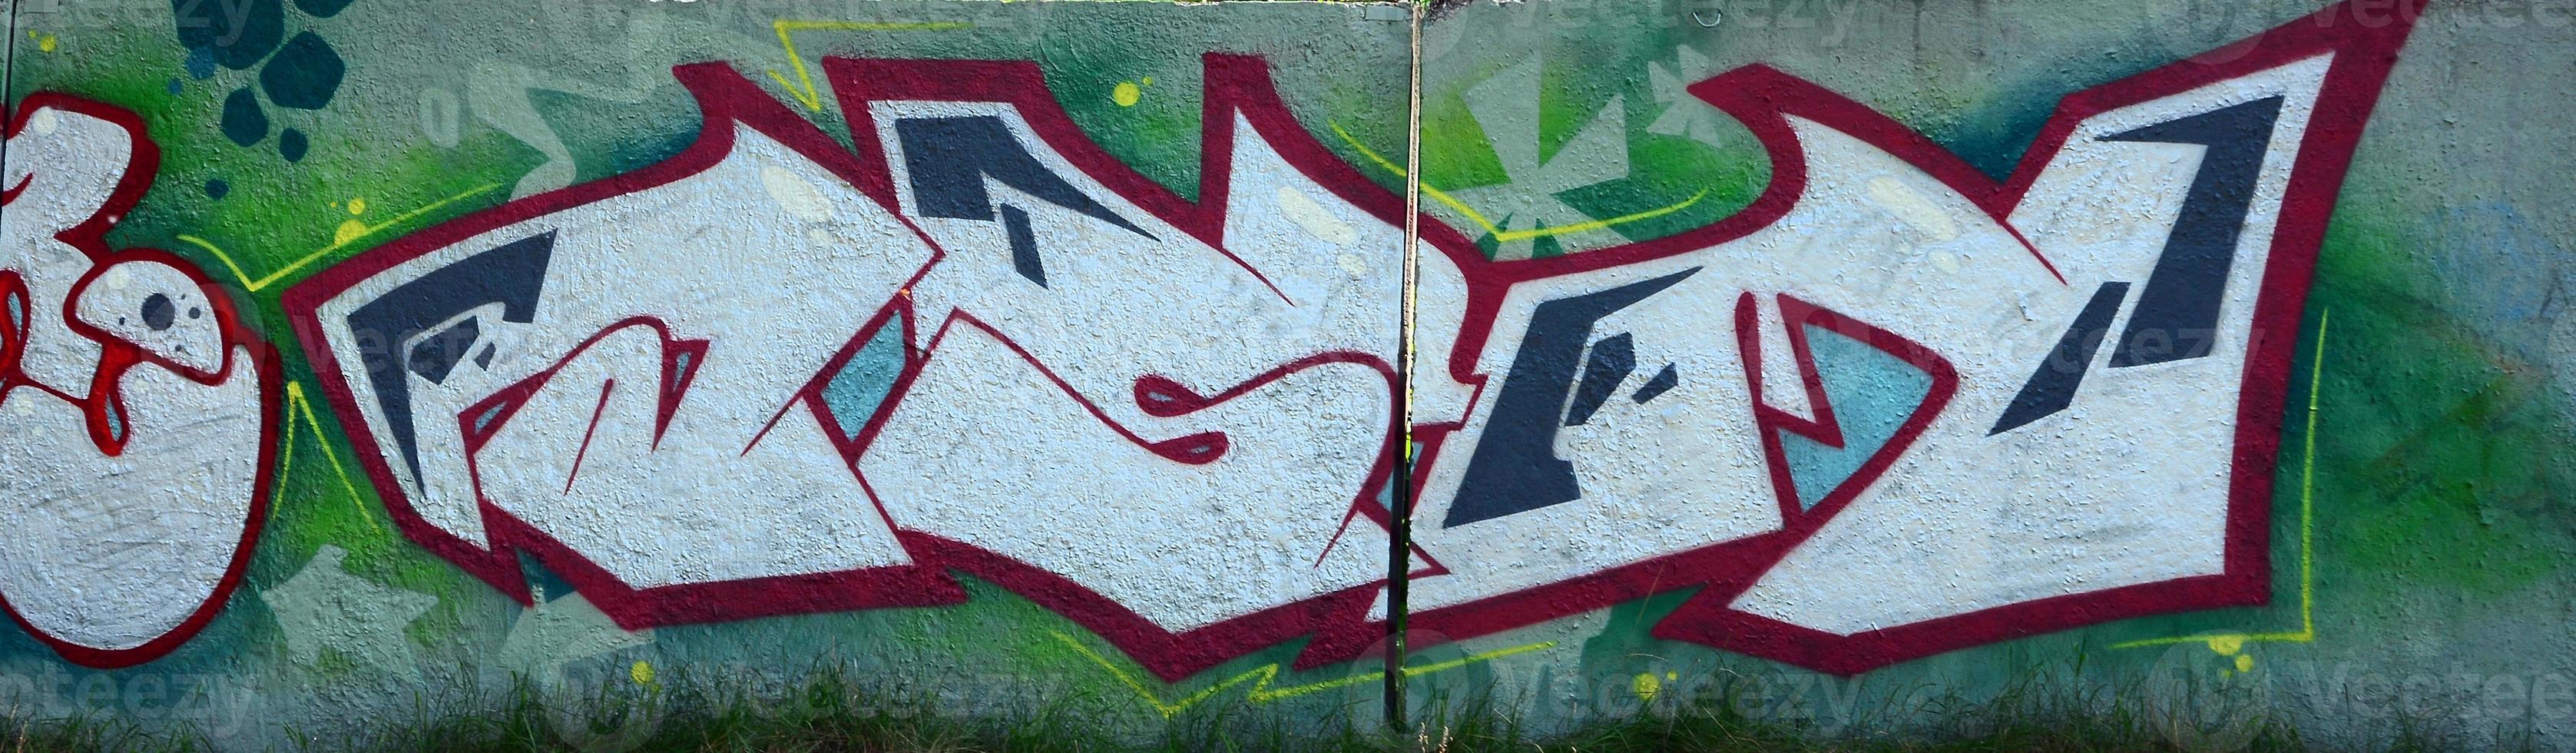 straat kunst. abstract achtergrond beeld van een vol voltooid graffiti schilderij in chroom vullen, groen achtergrond en rood contouren foto